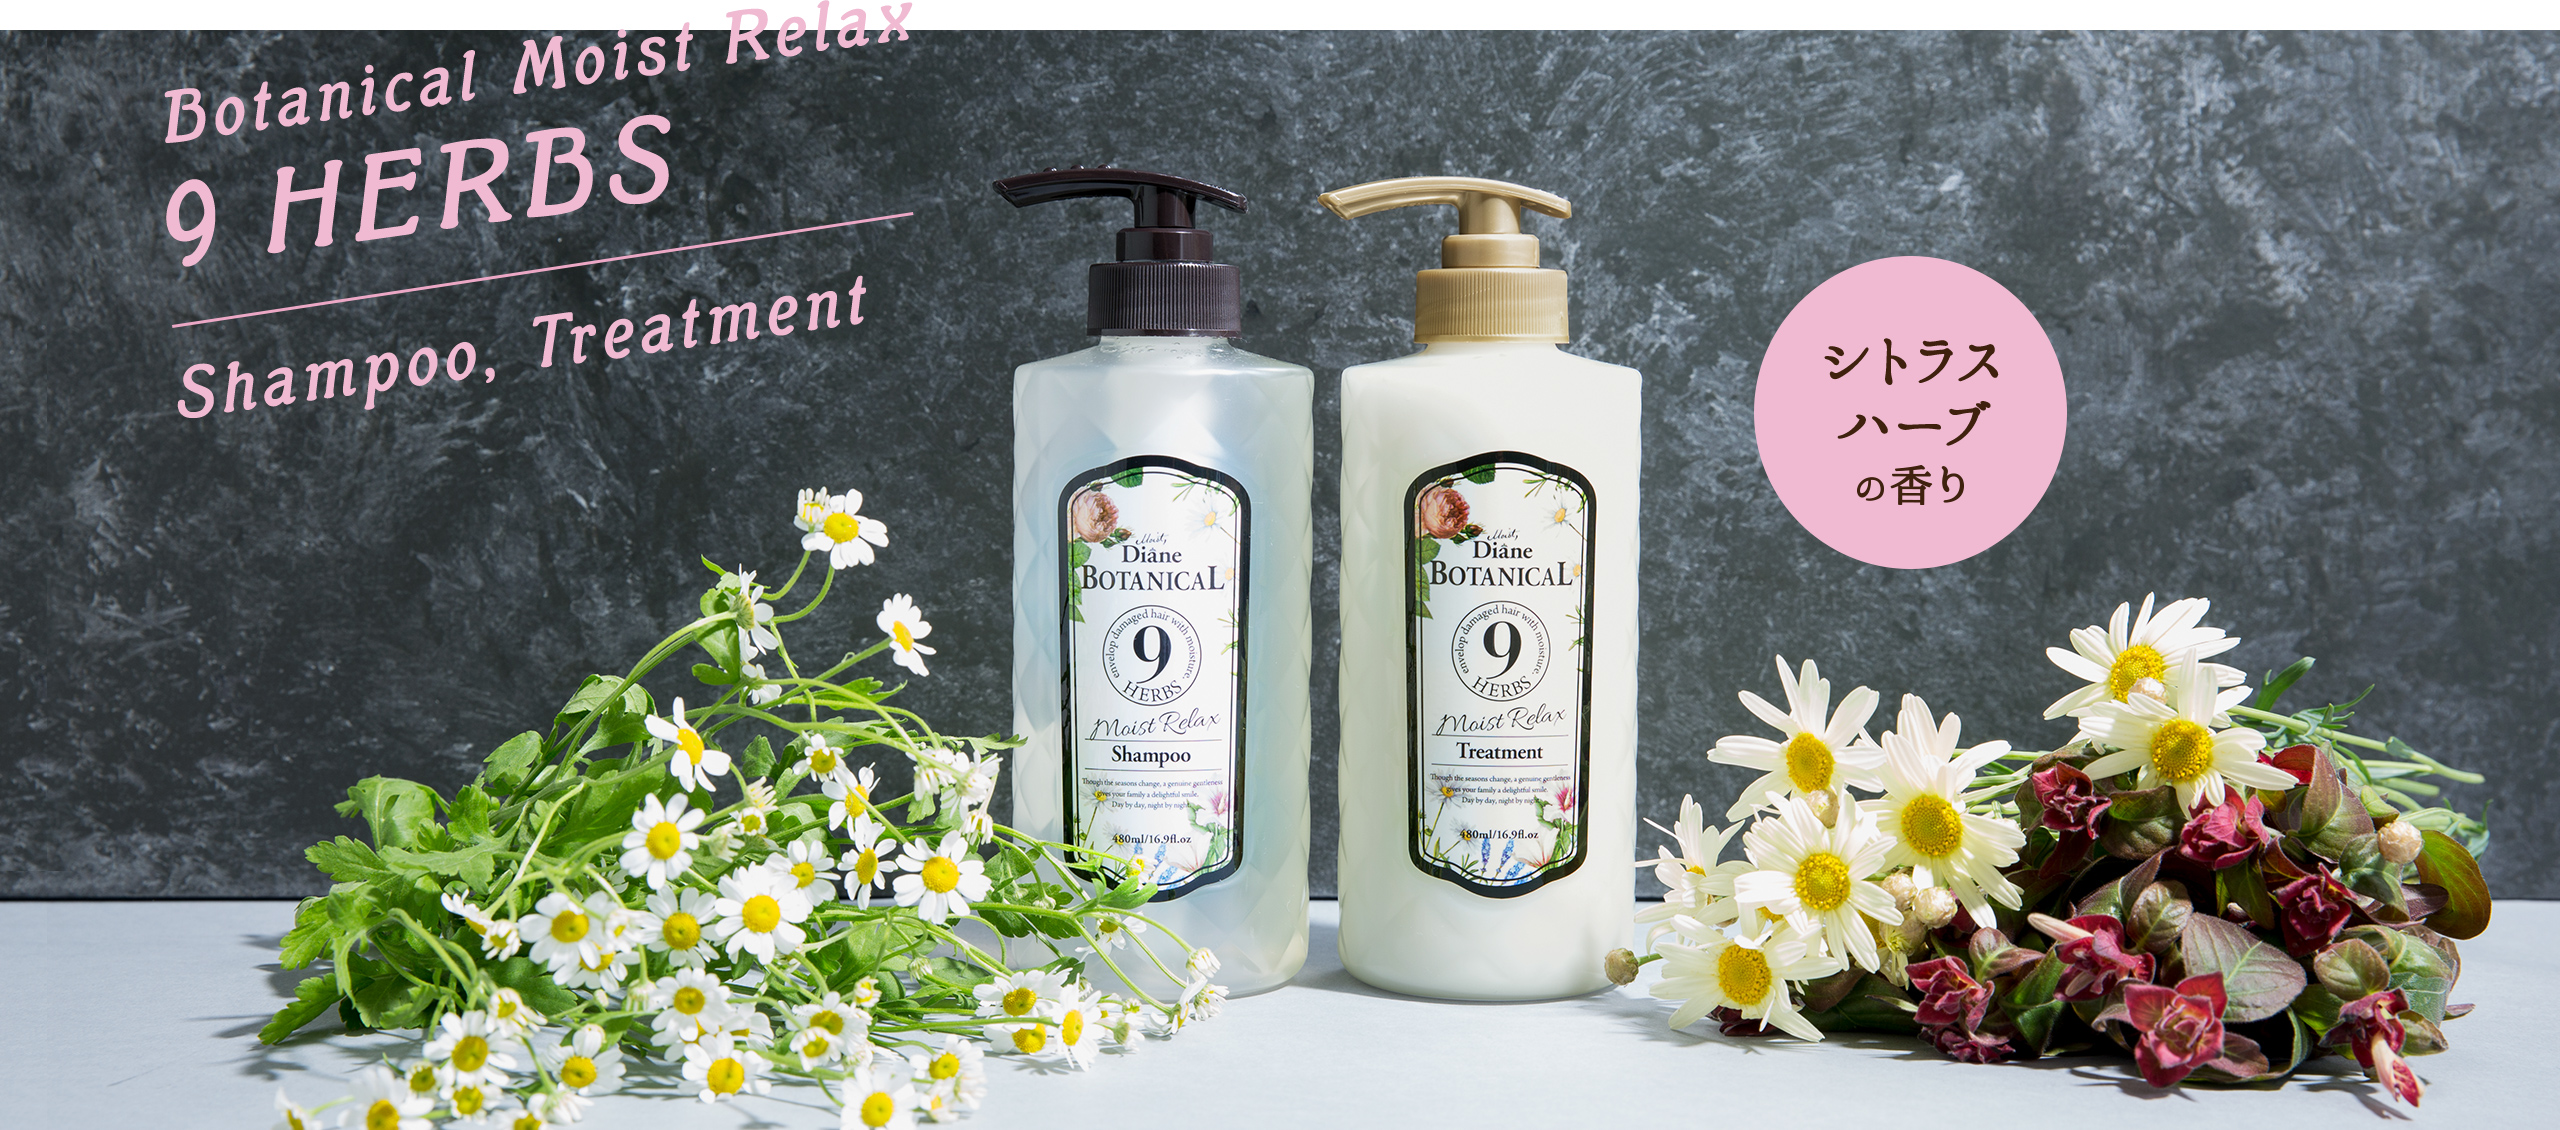 Botanical Moist Relax 9 HERBS Shampoo, Treatment シトラスハーブの香り